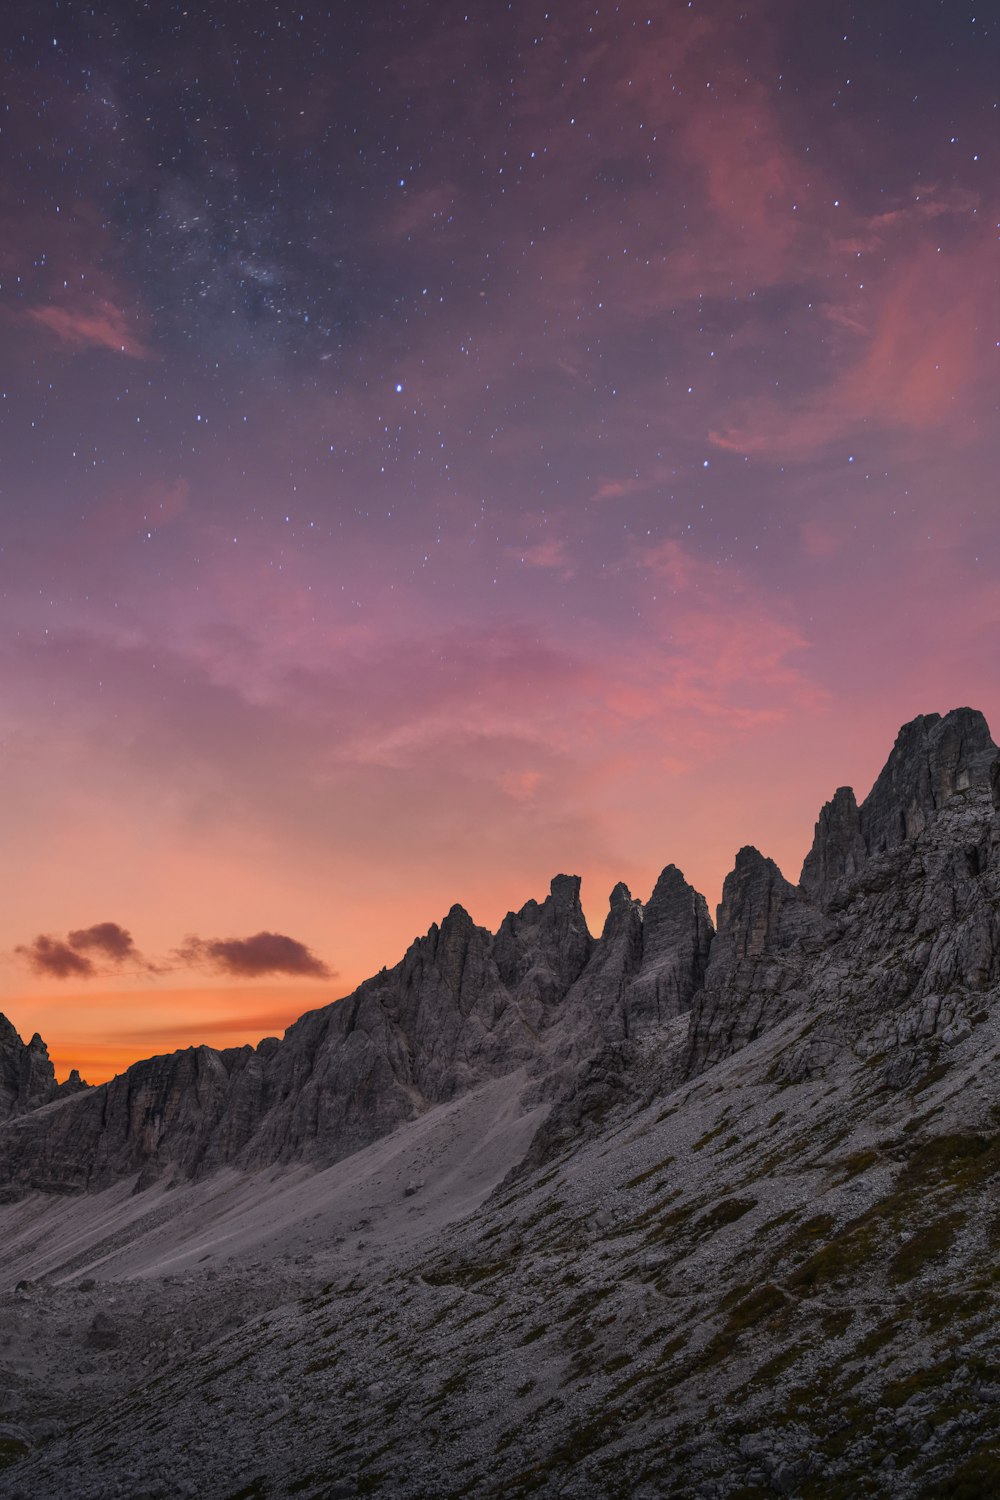 Đặt tay lên trái tim và cảm nhận sự yên bình khi ngắm nhìn hình ảnh núi trời miễn phí trên Unsplash. Với hơn 1000 bức ảnh đẹp như mơ, bạn sẽ có cơ hội trải qua những trải nghiệm đáng nhớ khi tái hiện tất cả độc đáo của sự hoang sơ nơi vùng núi cao.